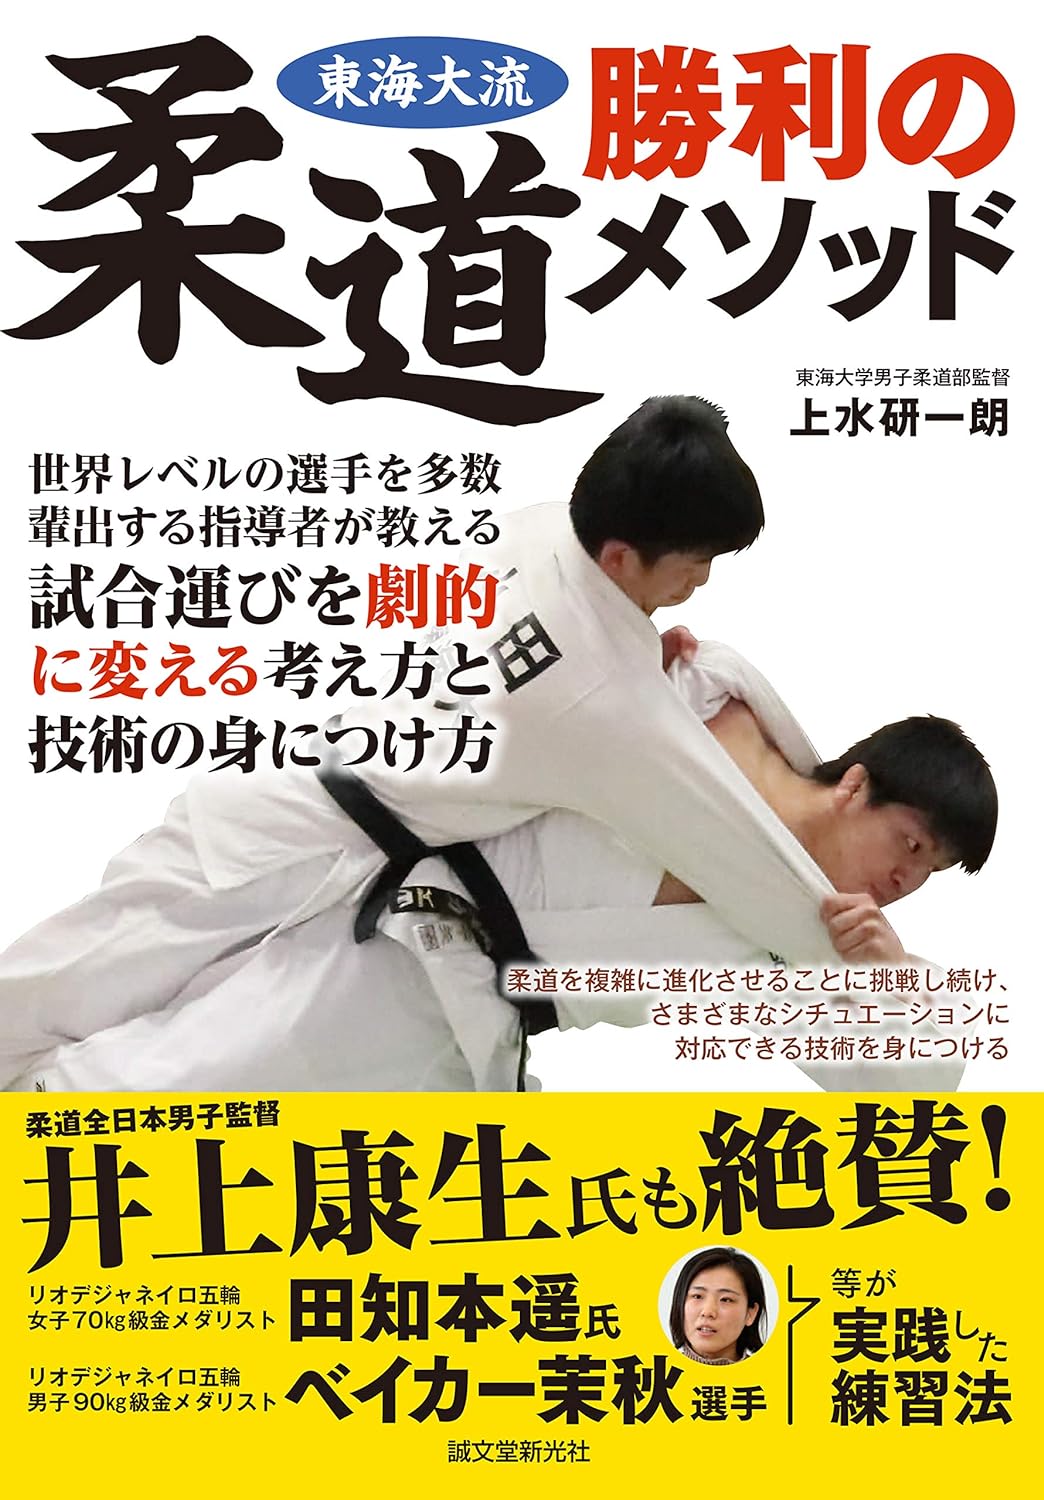 Tokaidai Ryu Dojo Winning Method Book by Kenichiro Kamizu